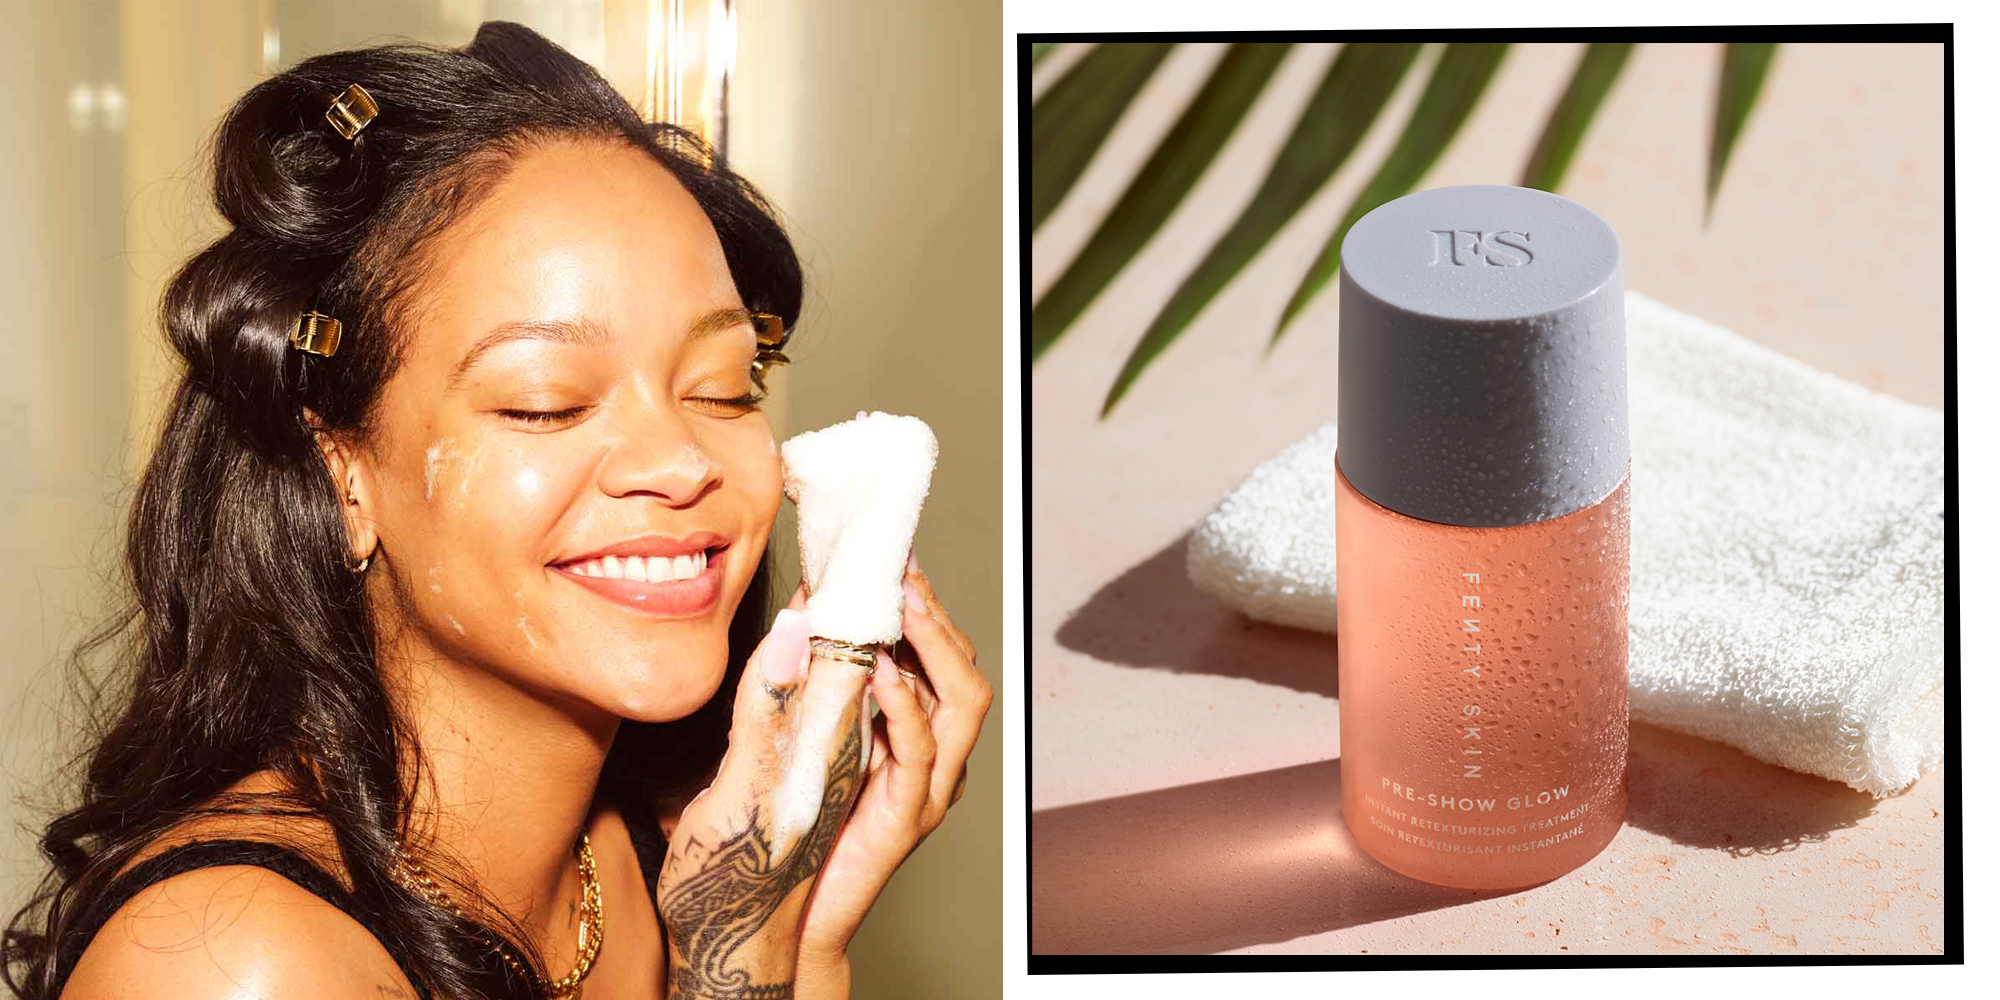 Rihanna's Fenty Skin launches new Fat Water Milky Toner